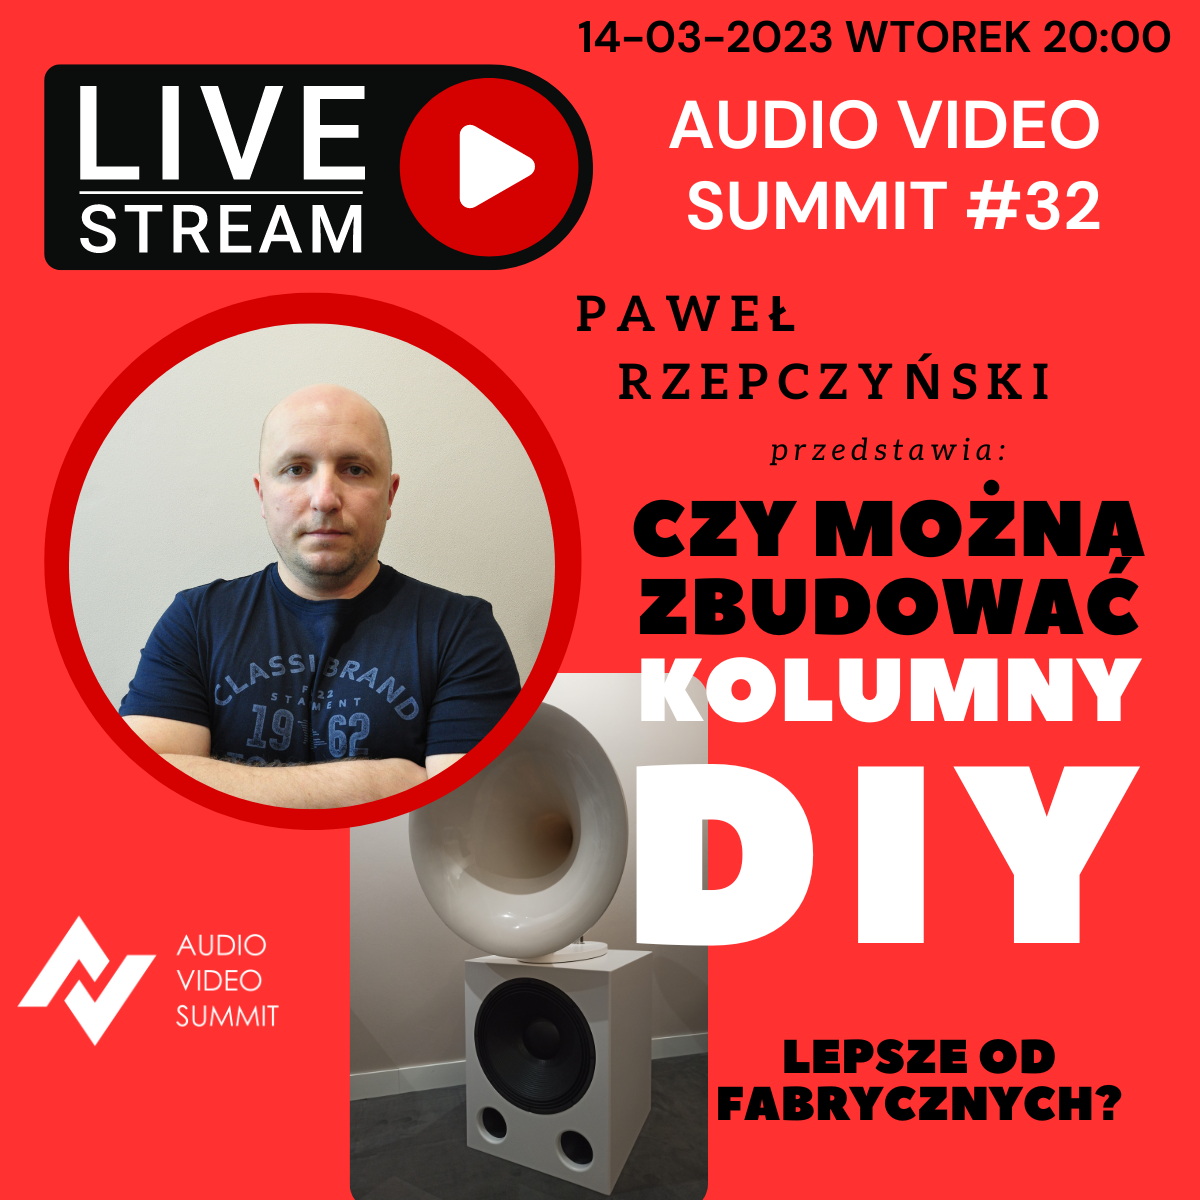 Audio Video Summit #32: Czy można zbudować kolumny DIY lepsze od fabrycznych?